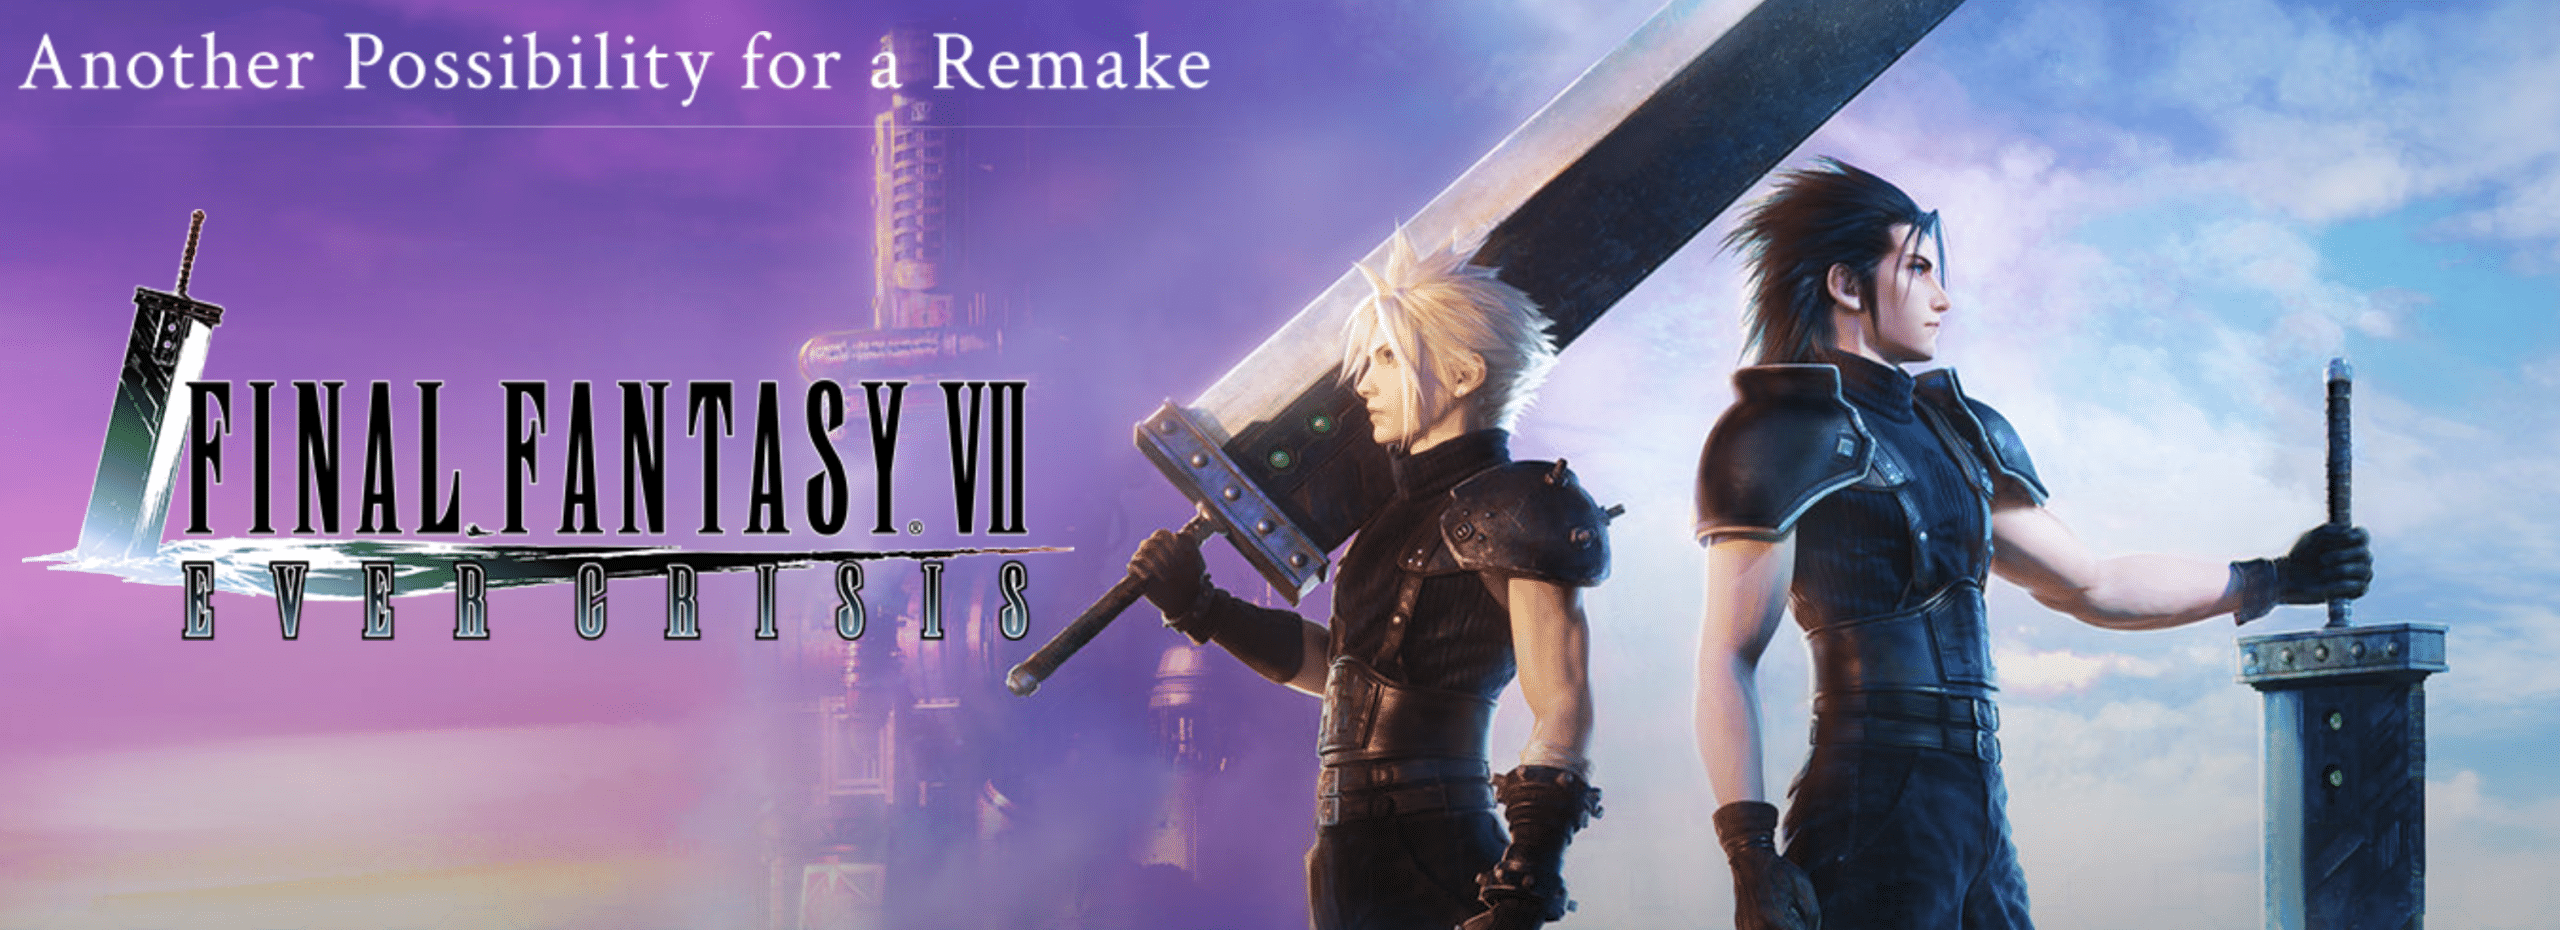 Final Fantasy VII Ever Crisis Closed Beta Begins June 8 21